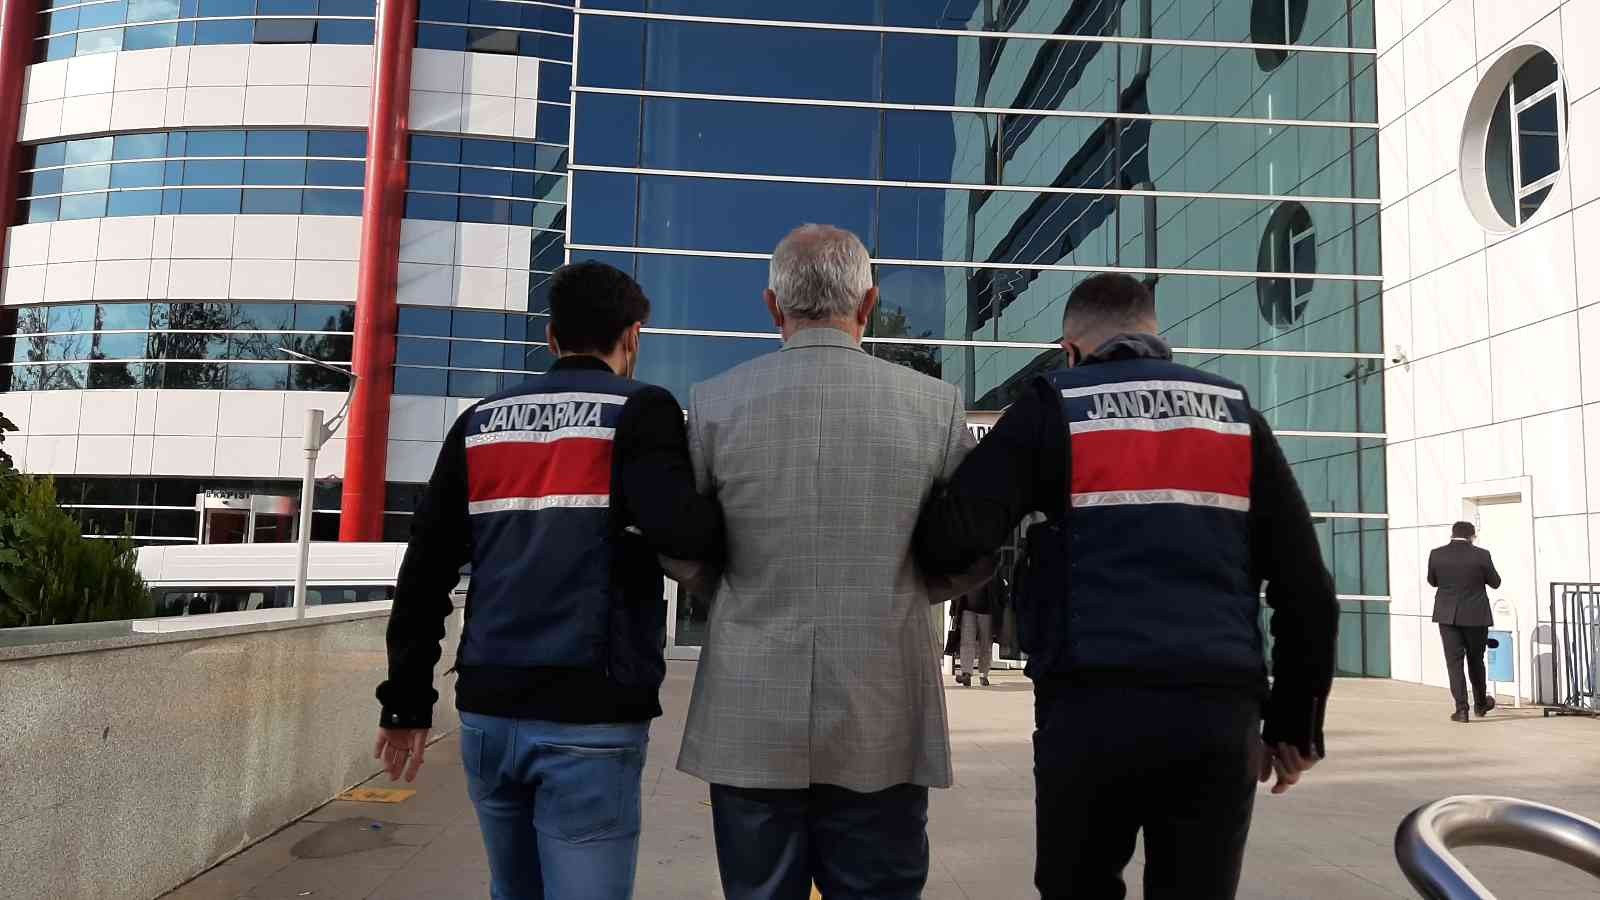 Yurt dışına kaçarken yakalanan HDP’li eski belediye başkanı tutuklandı